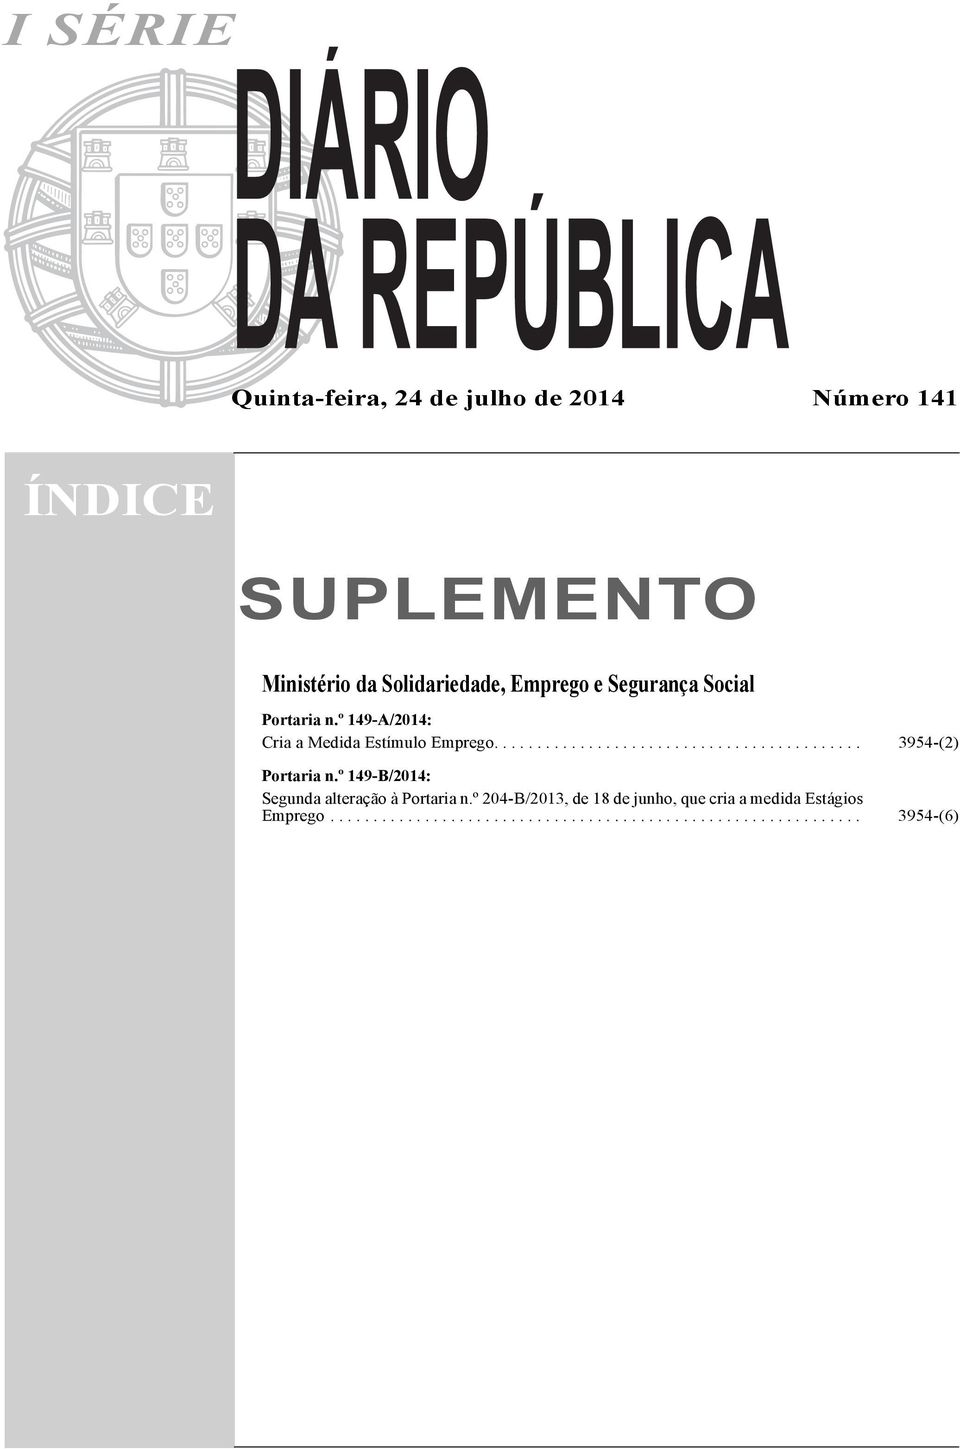 º 149-B/2014: Segunda alteração à Portaria n.